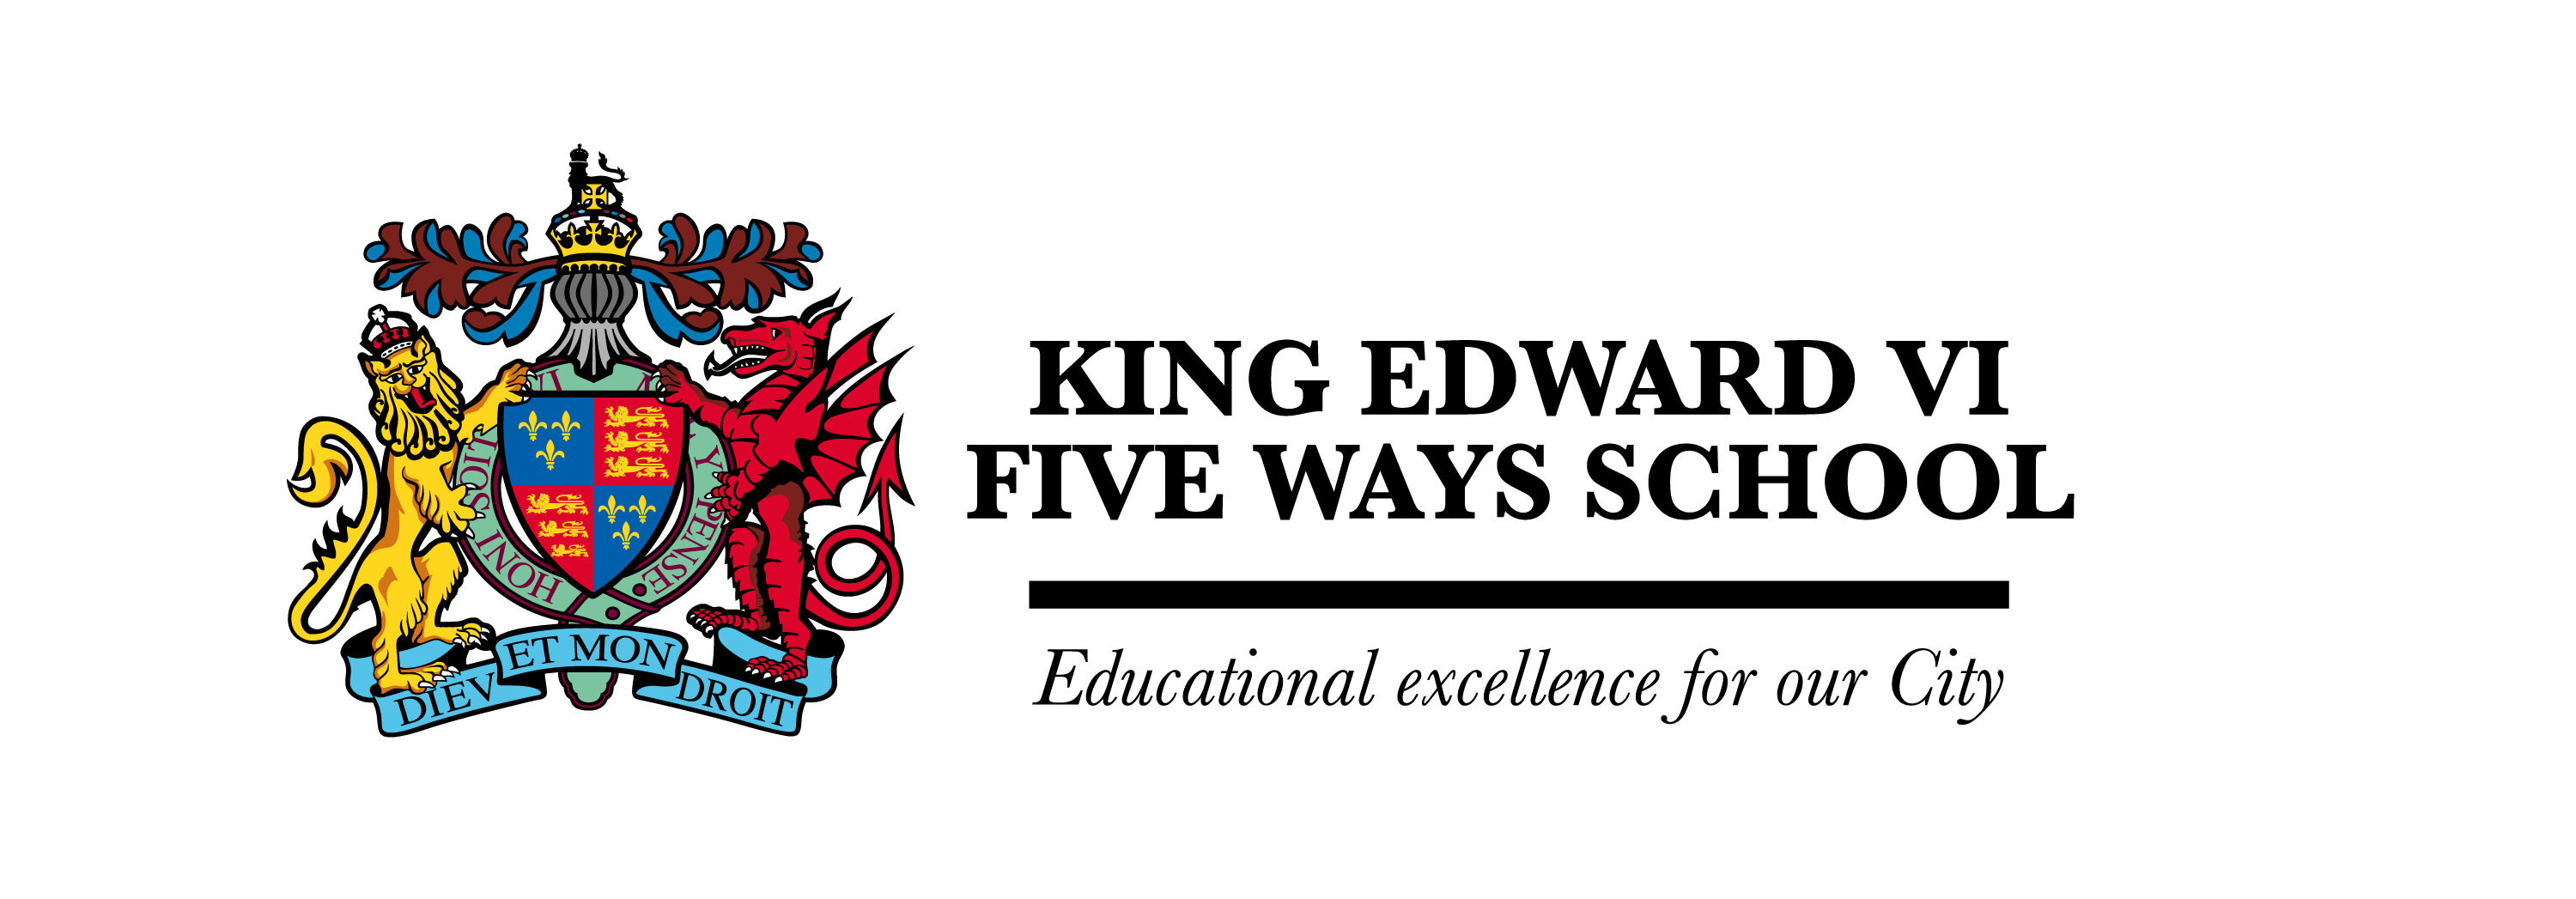 King Edward VI Five Ways School校徽